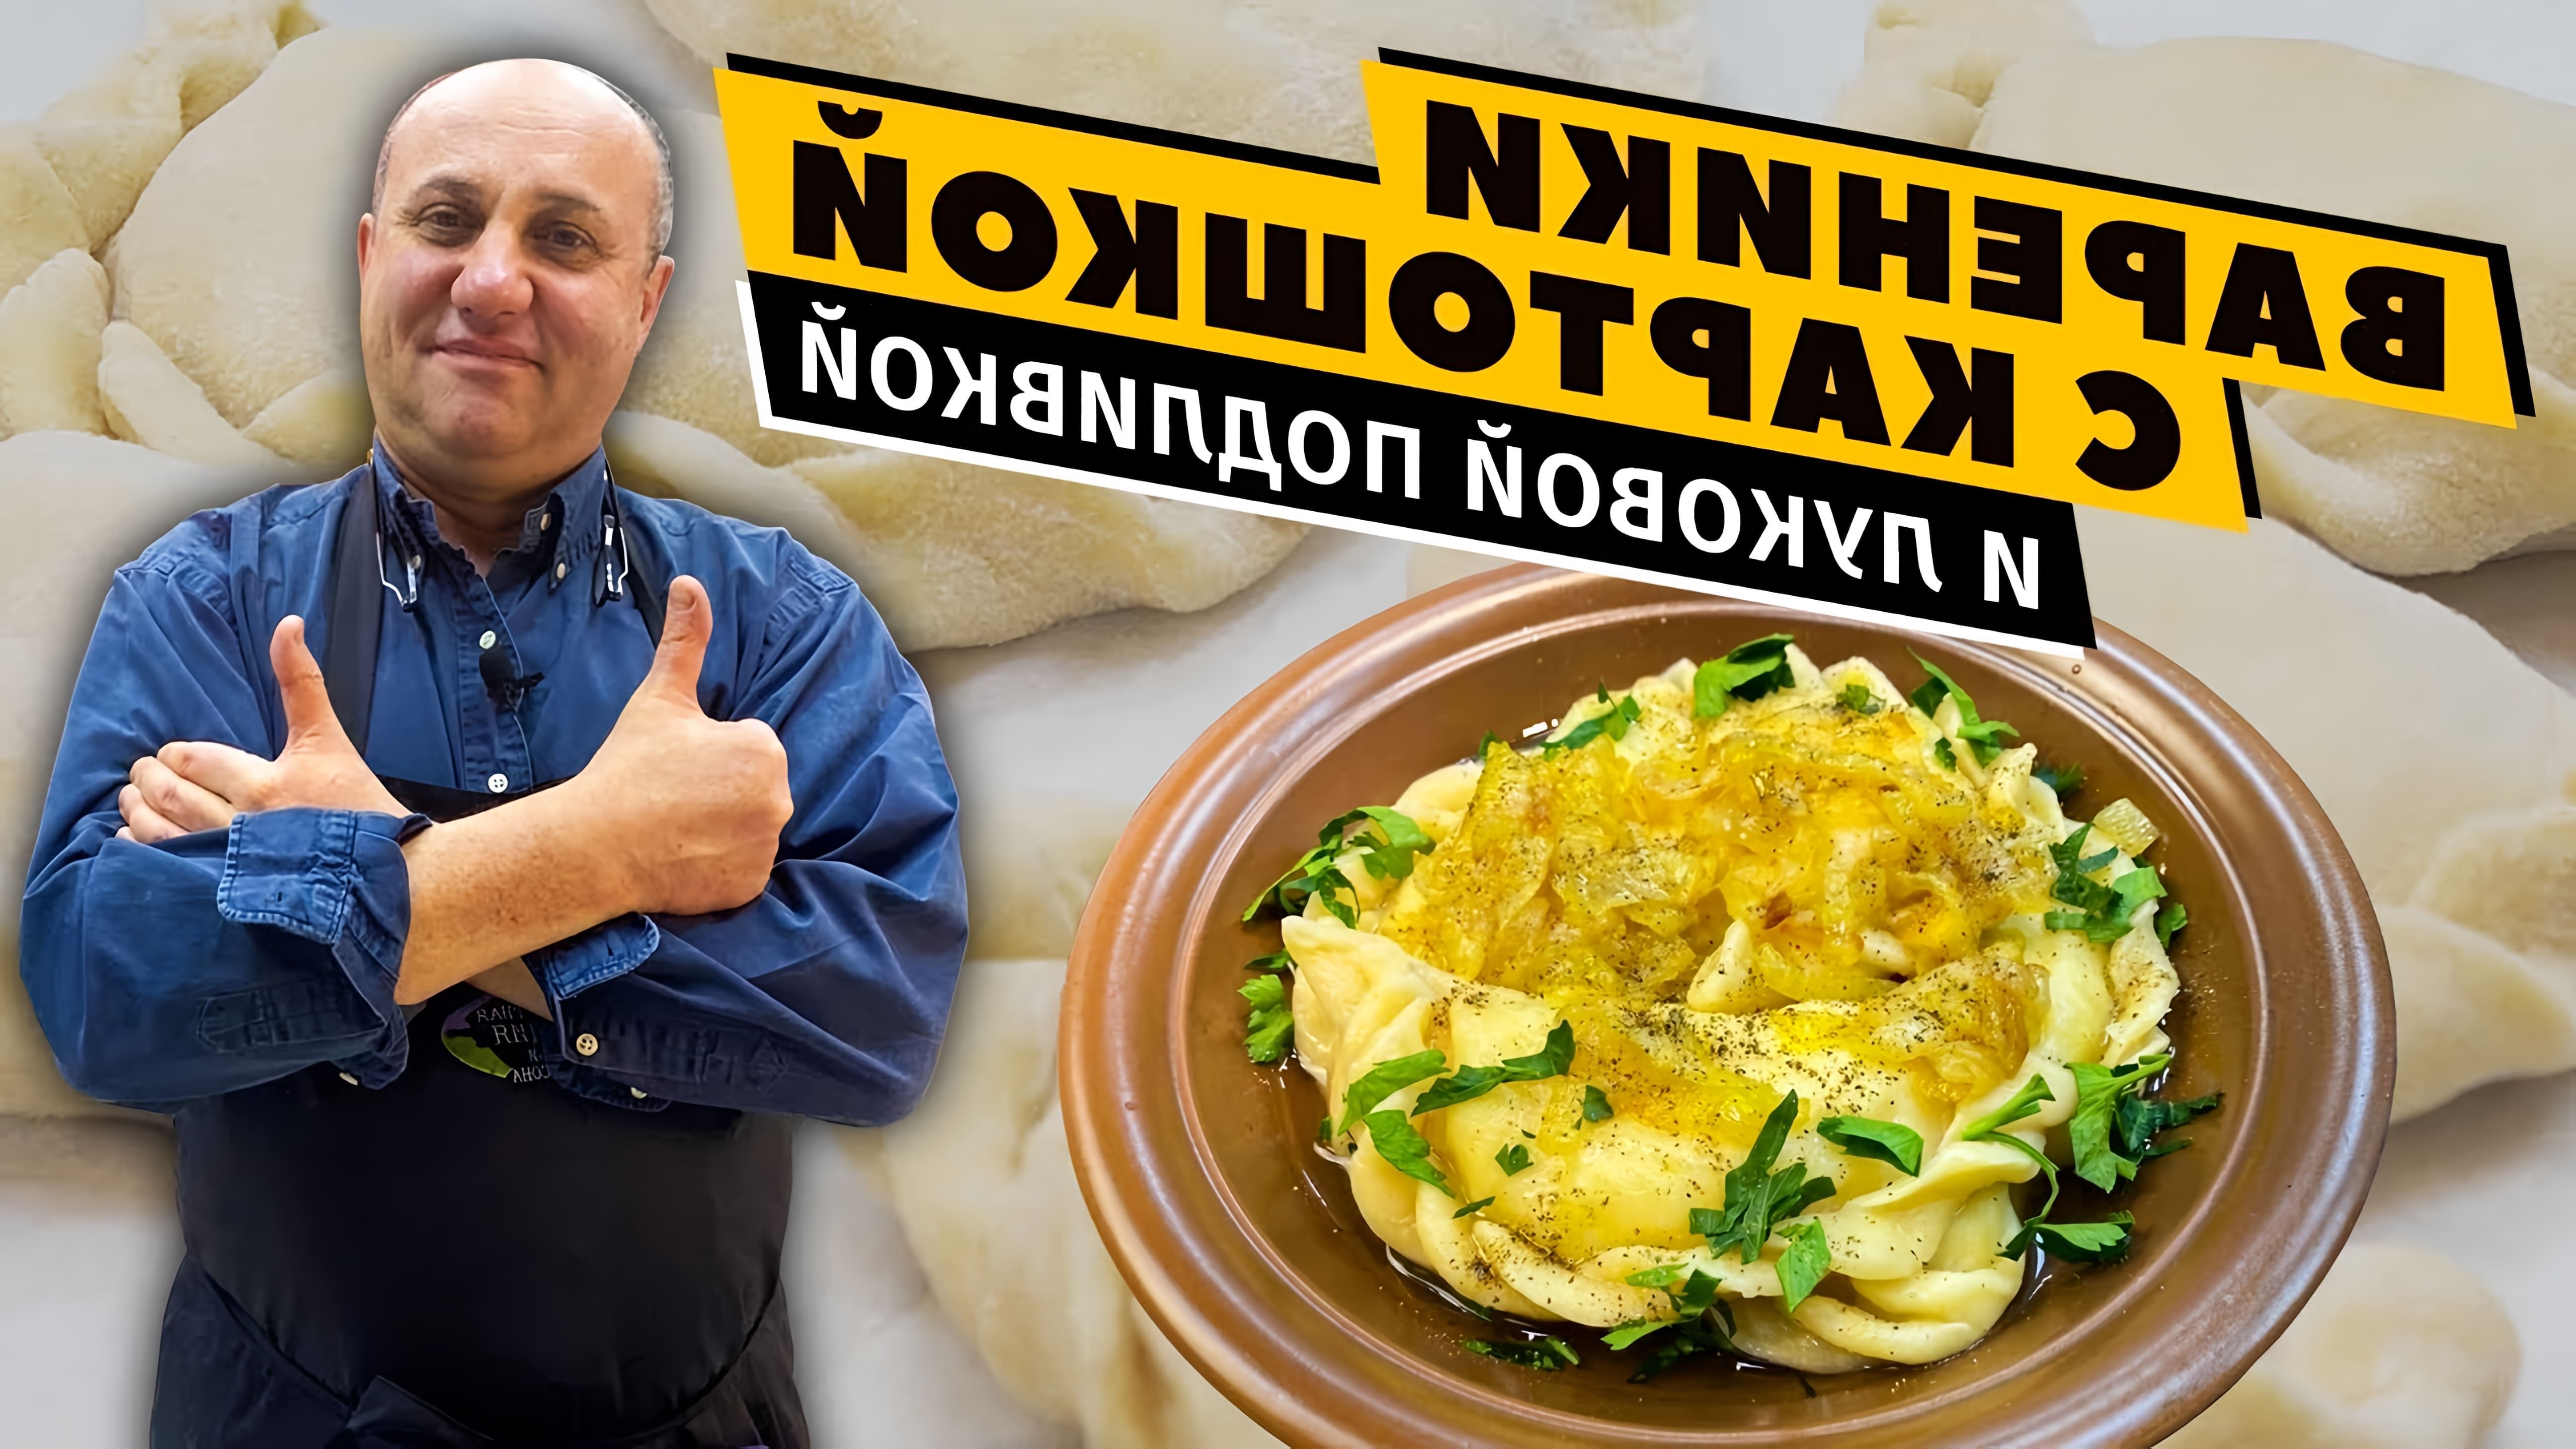 В данном видео демонстрируется процесс приготовления вареников с картошкой и луковой подливкой